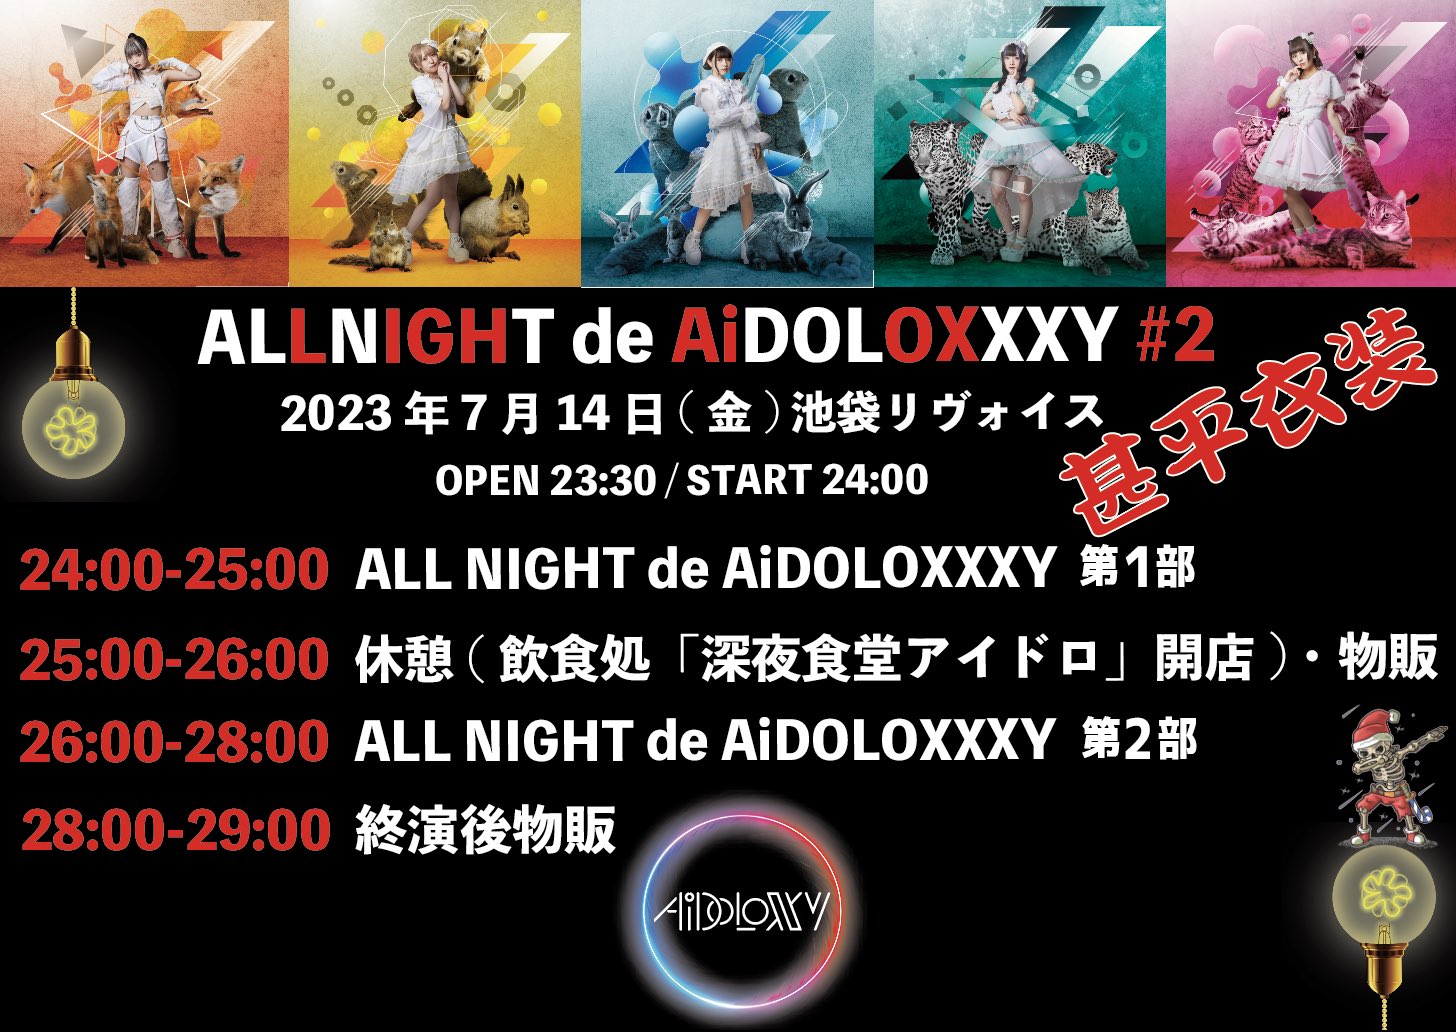 AiDOLOXXXY ALLNIGHT de AiDOLOXXXY #2